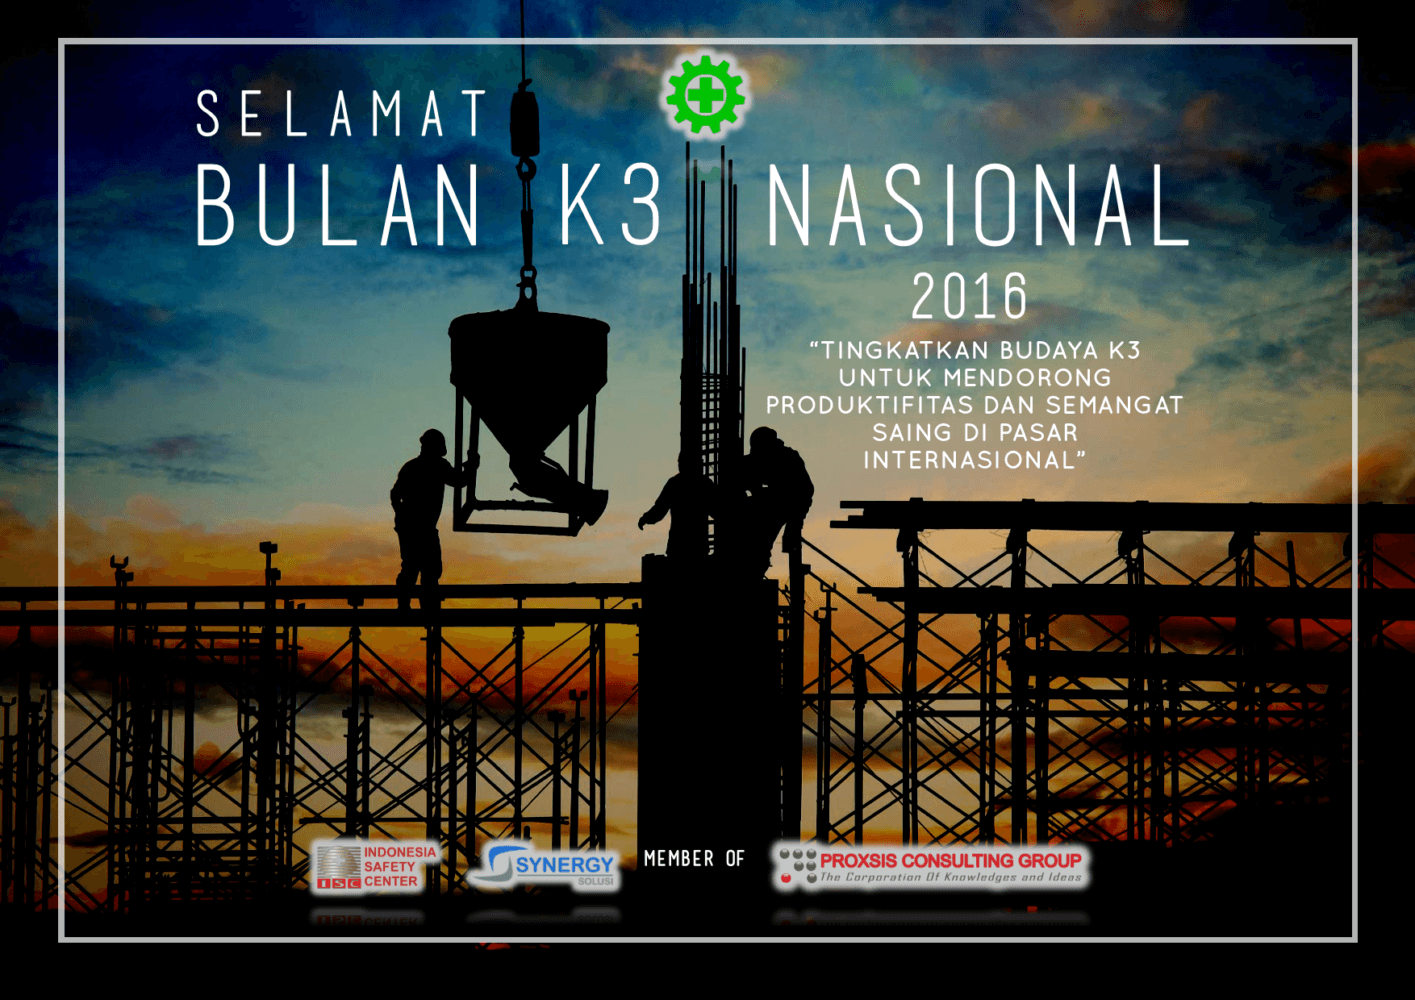 Bulan K3 Nasional 2016 - Filosofi K3 & Sejarah Singkat Bulan K3 Nasional